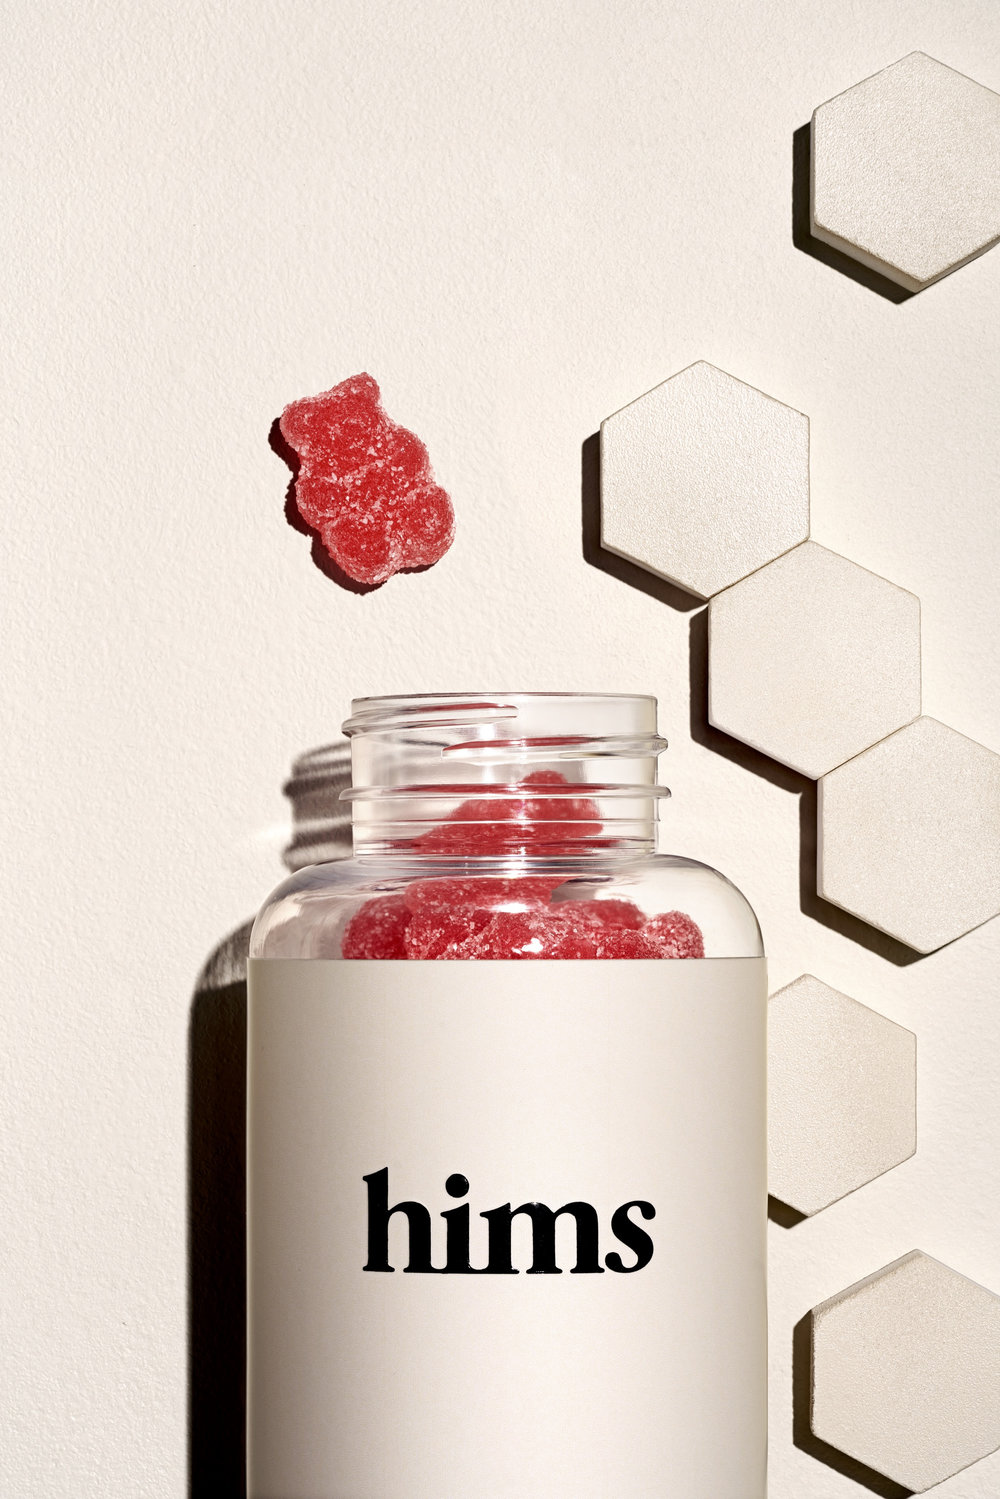 hims vitamins.jpg